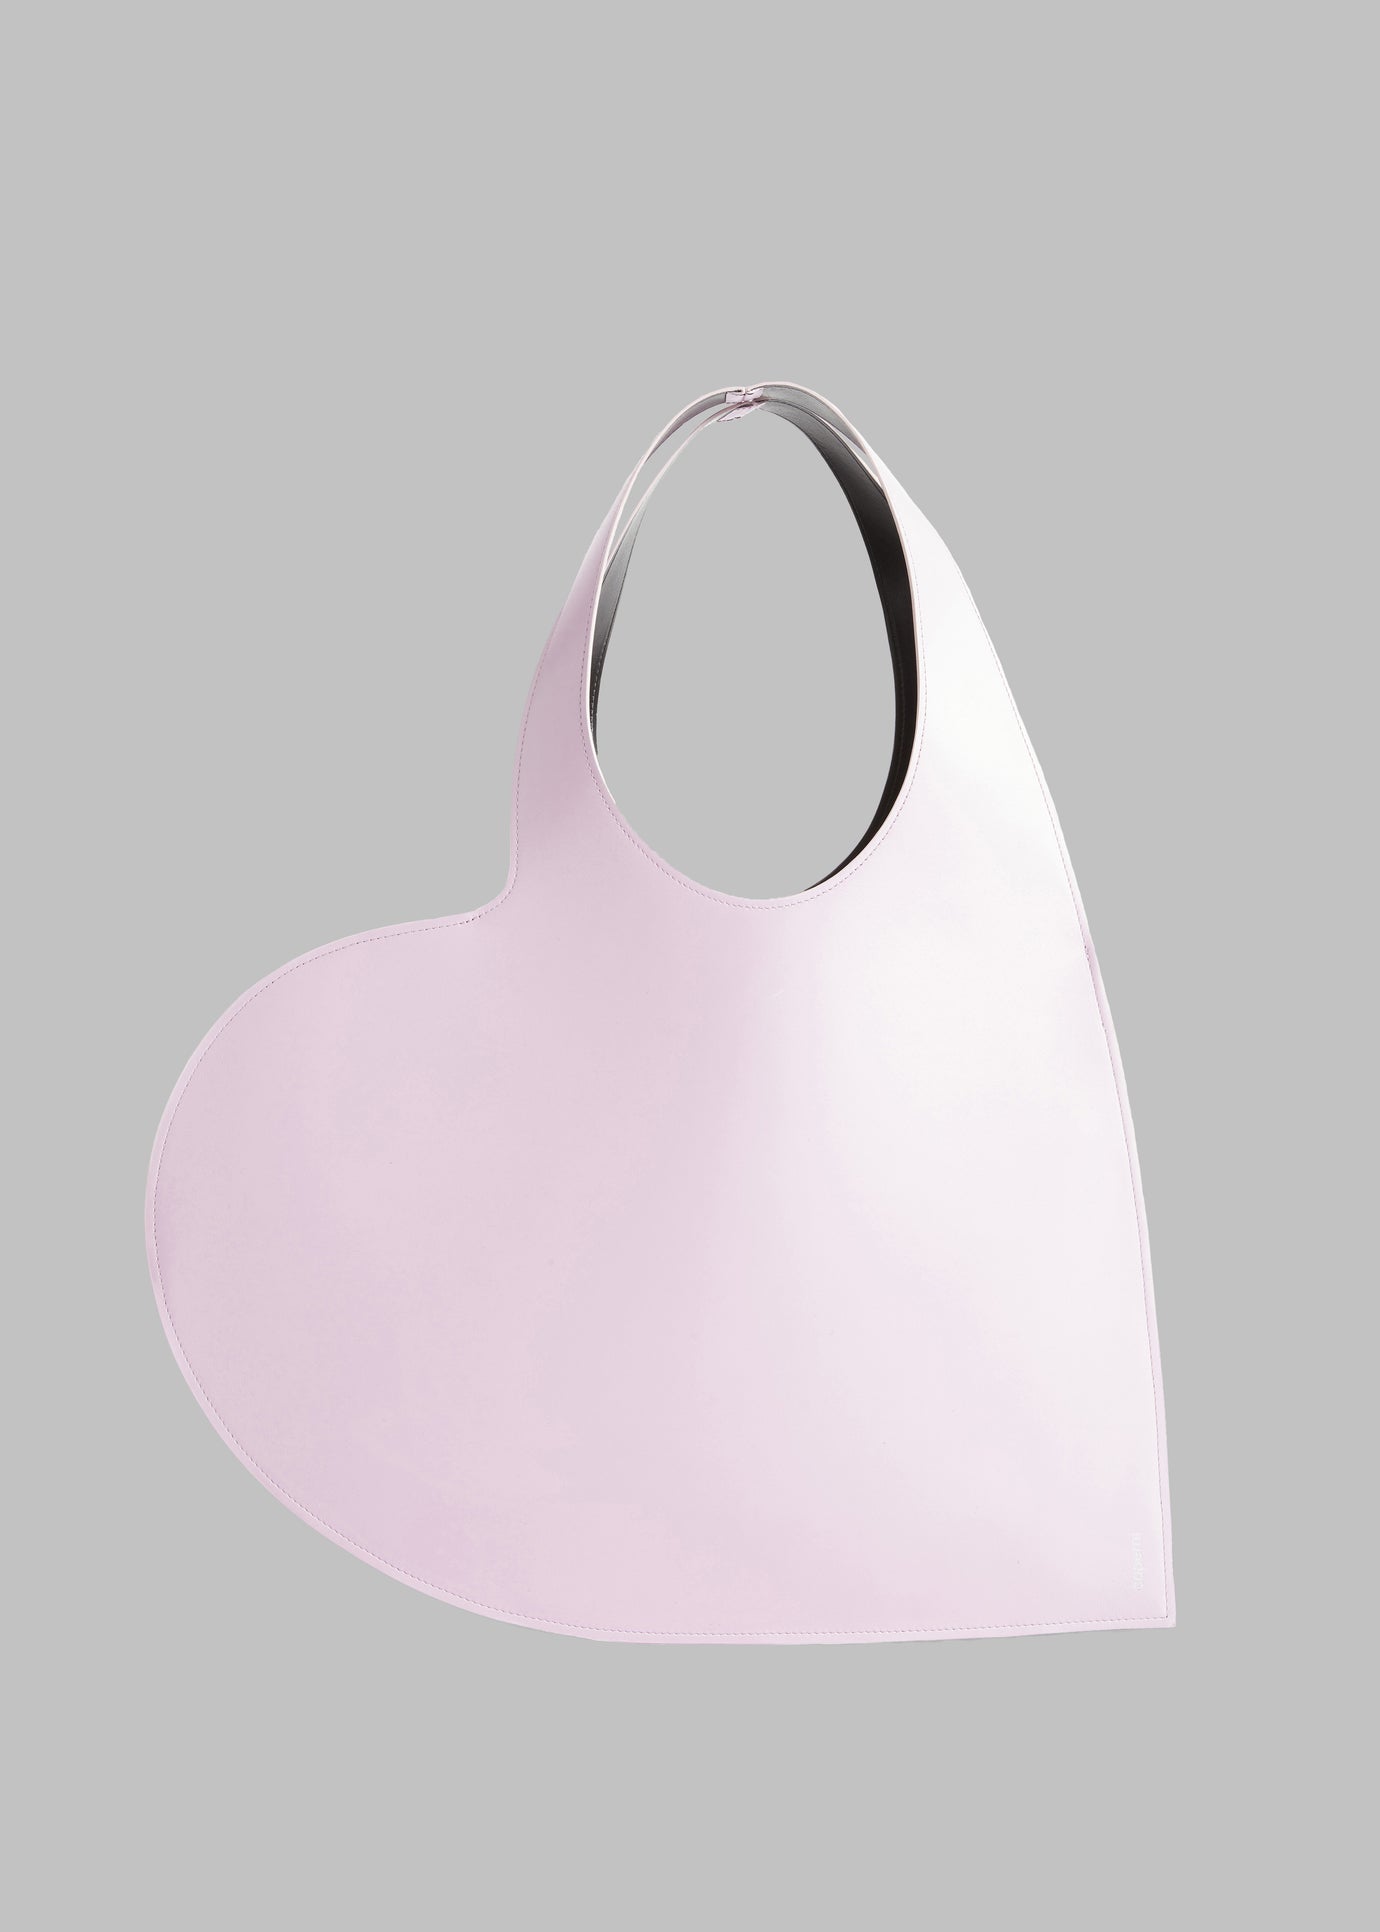 Coperni Heart Tote Bag - Light Pink